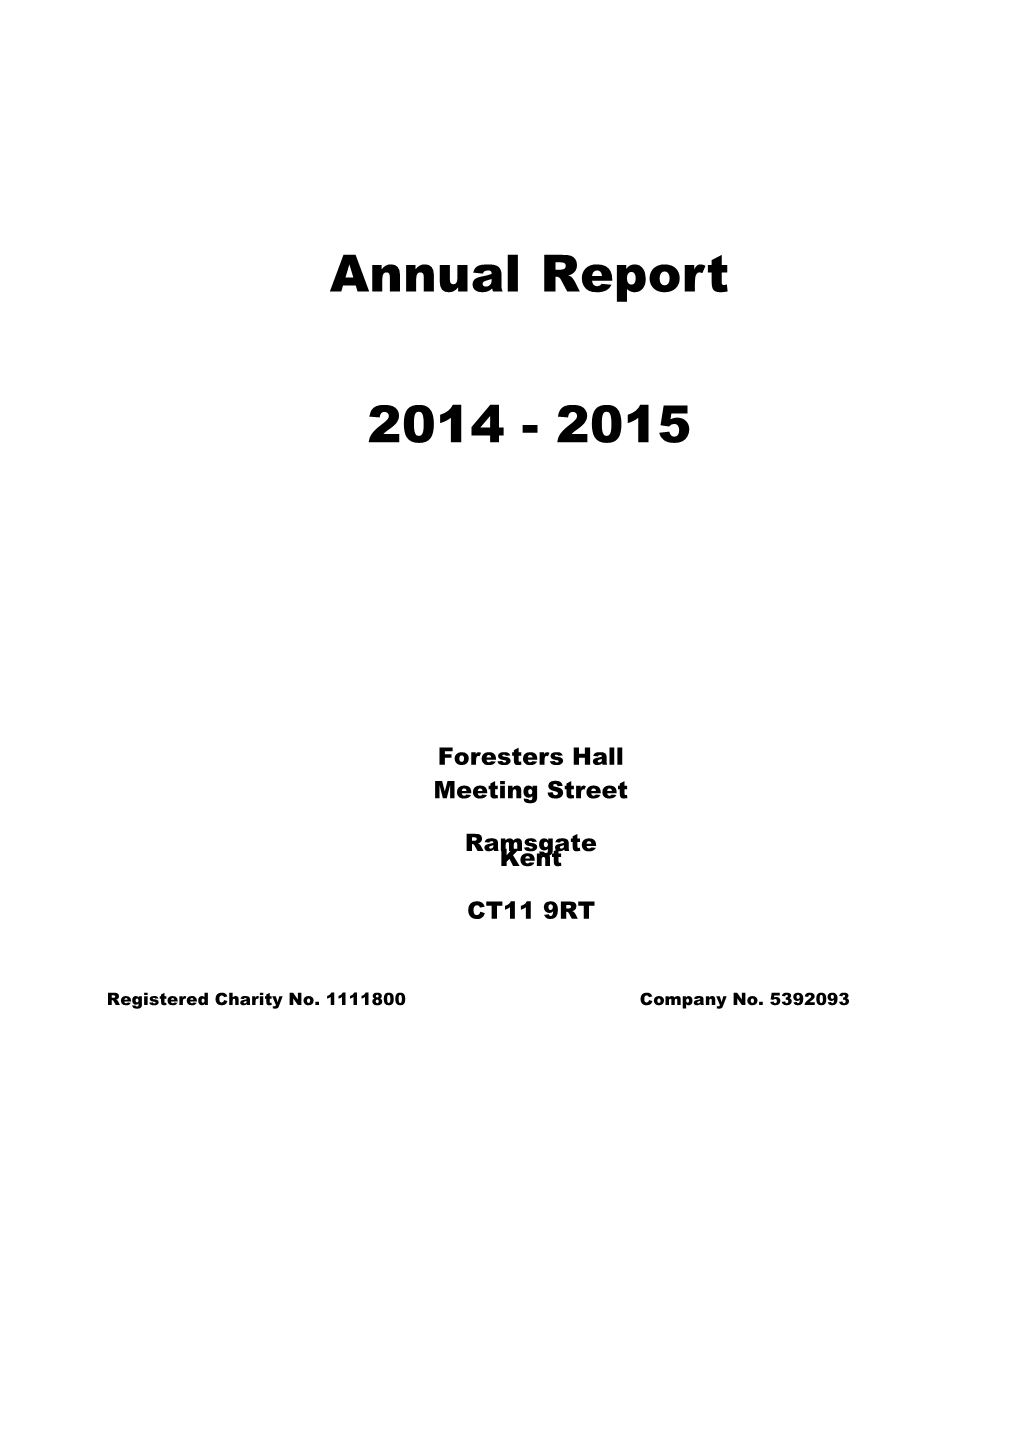 Annual Report s6